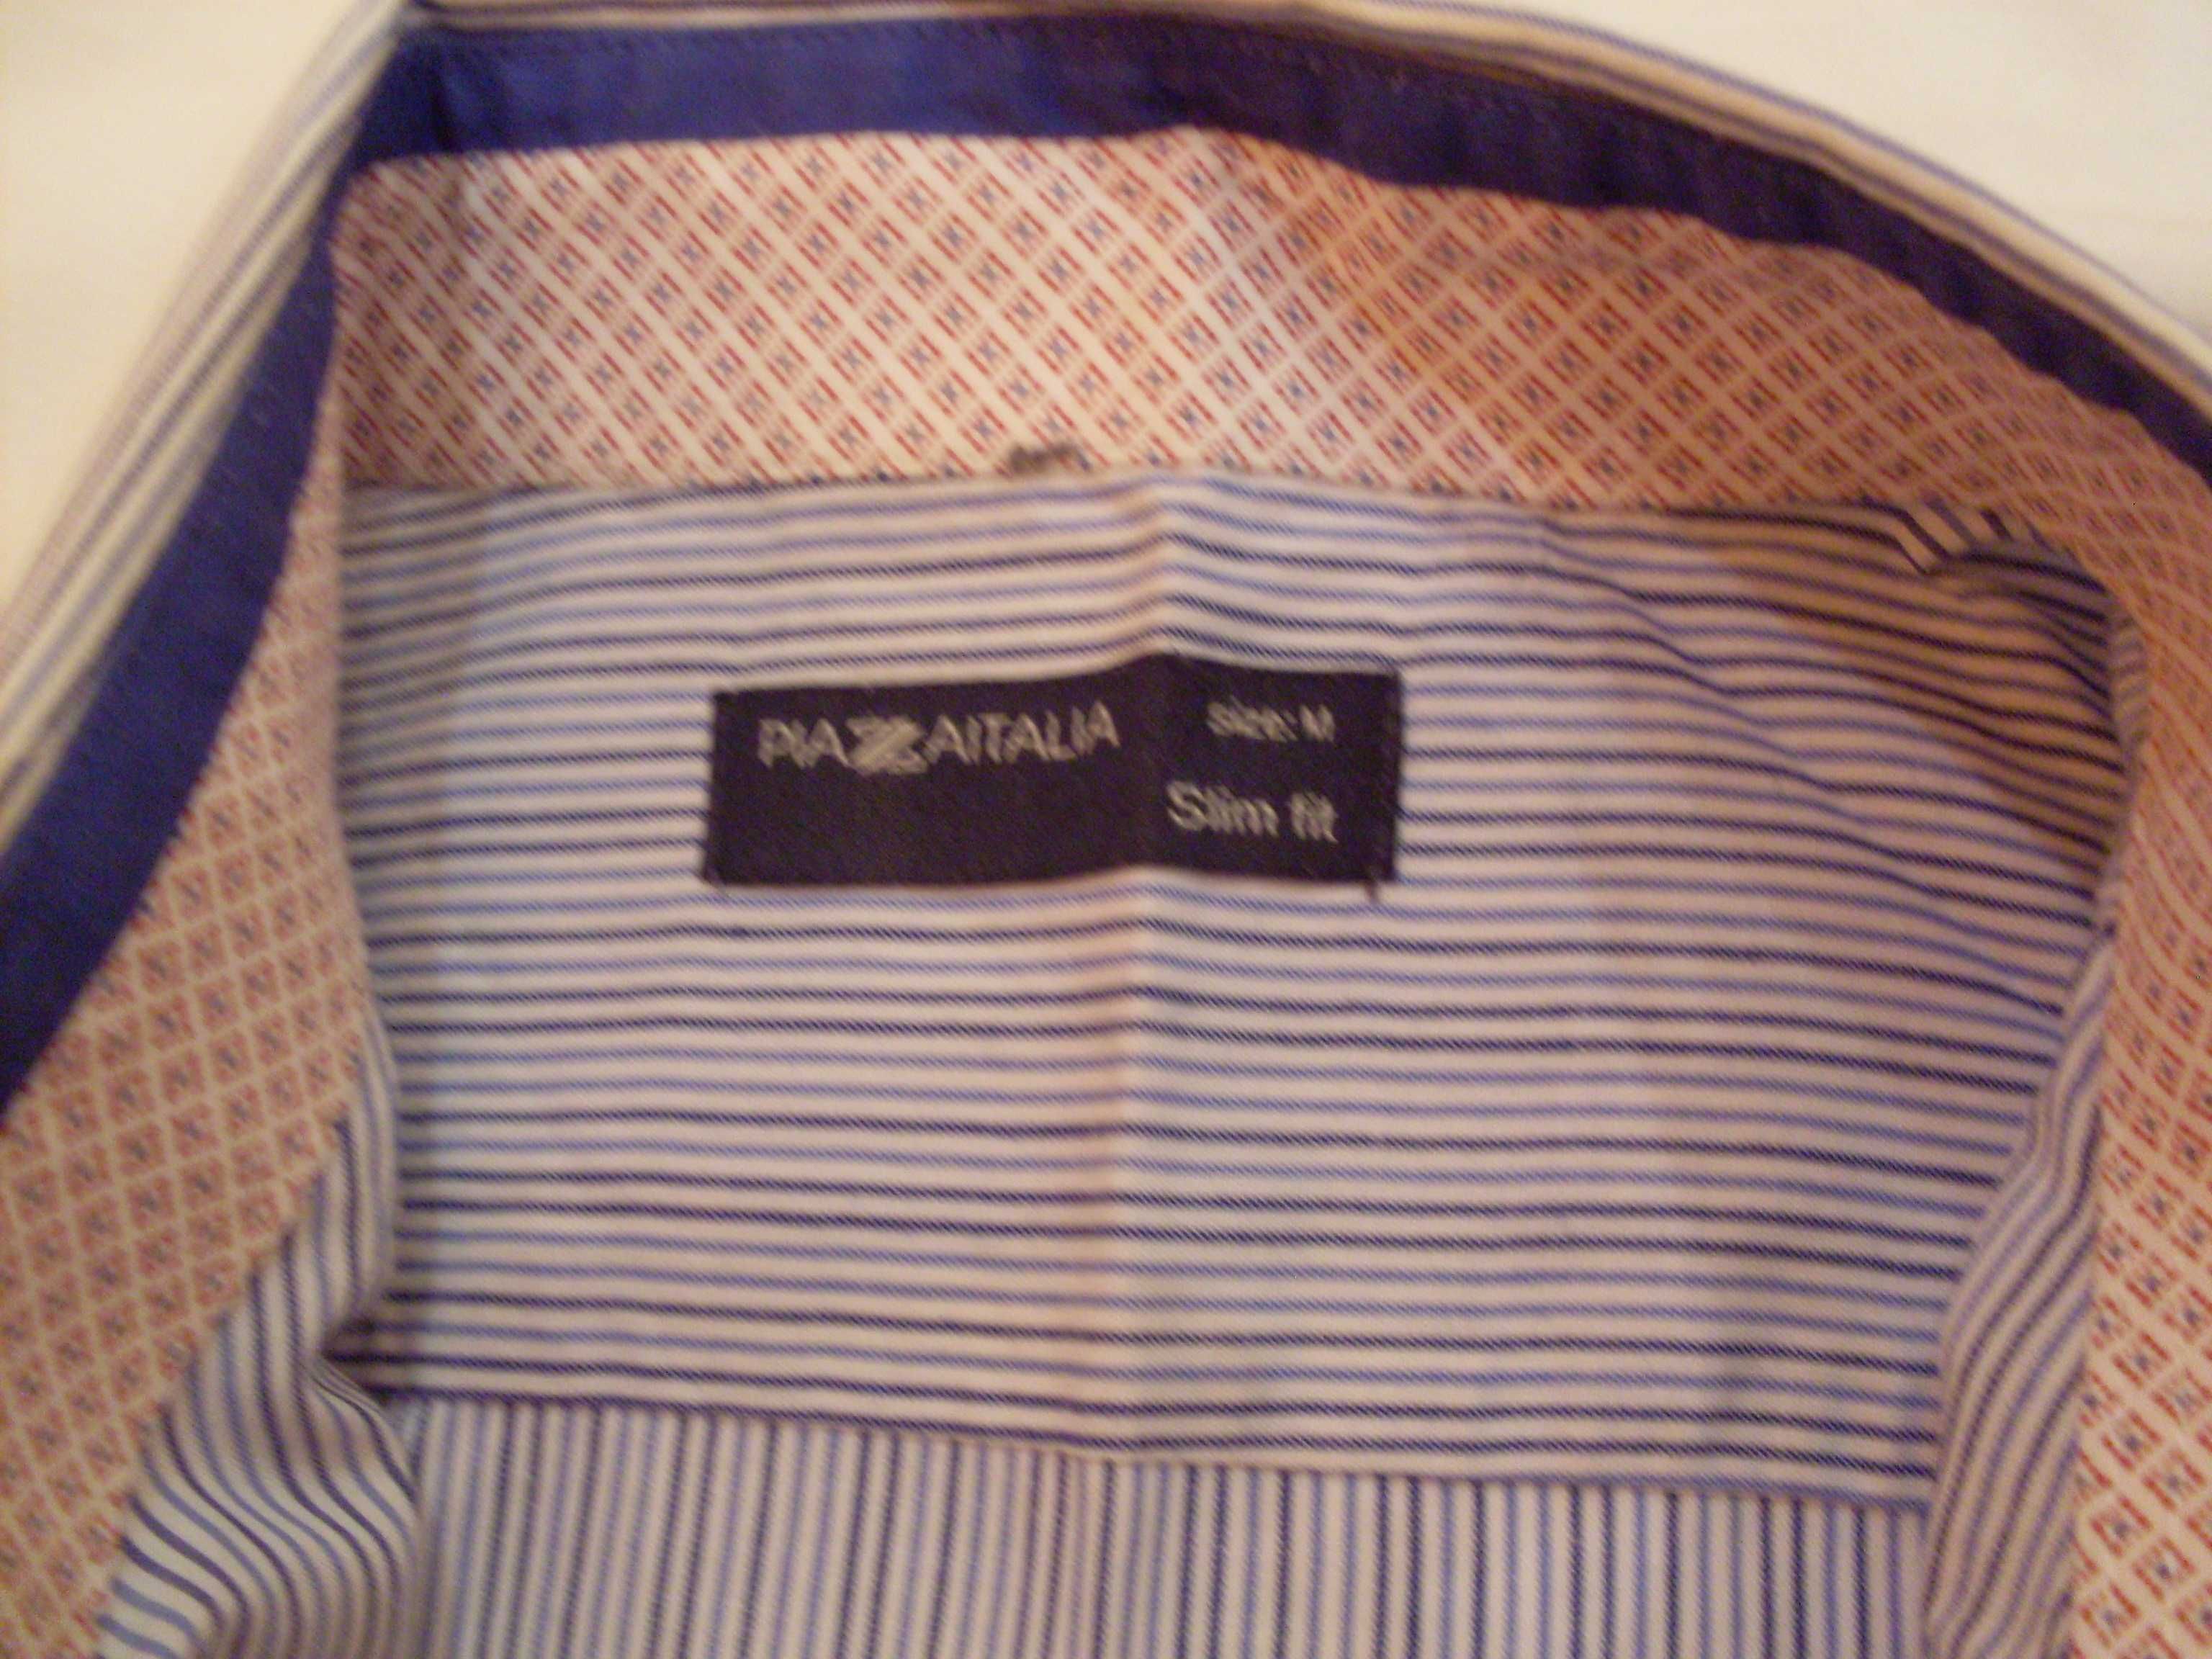 Рубашка Pazaitalia